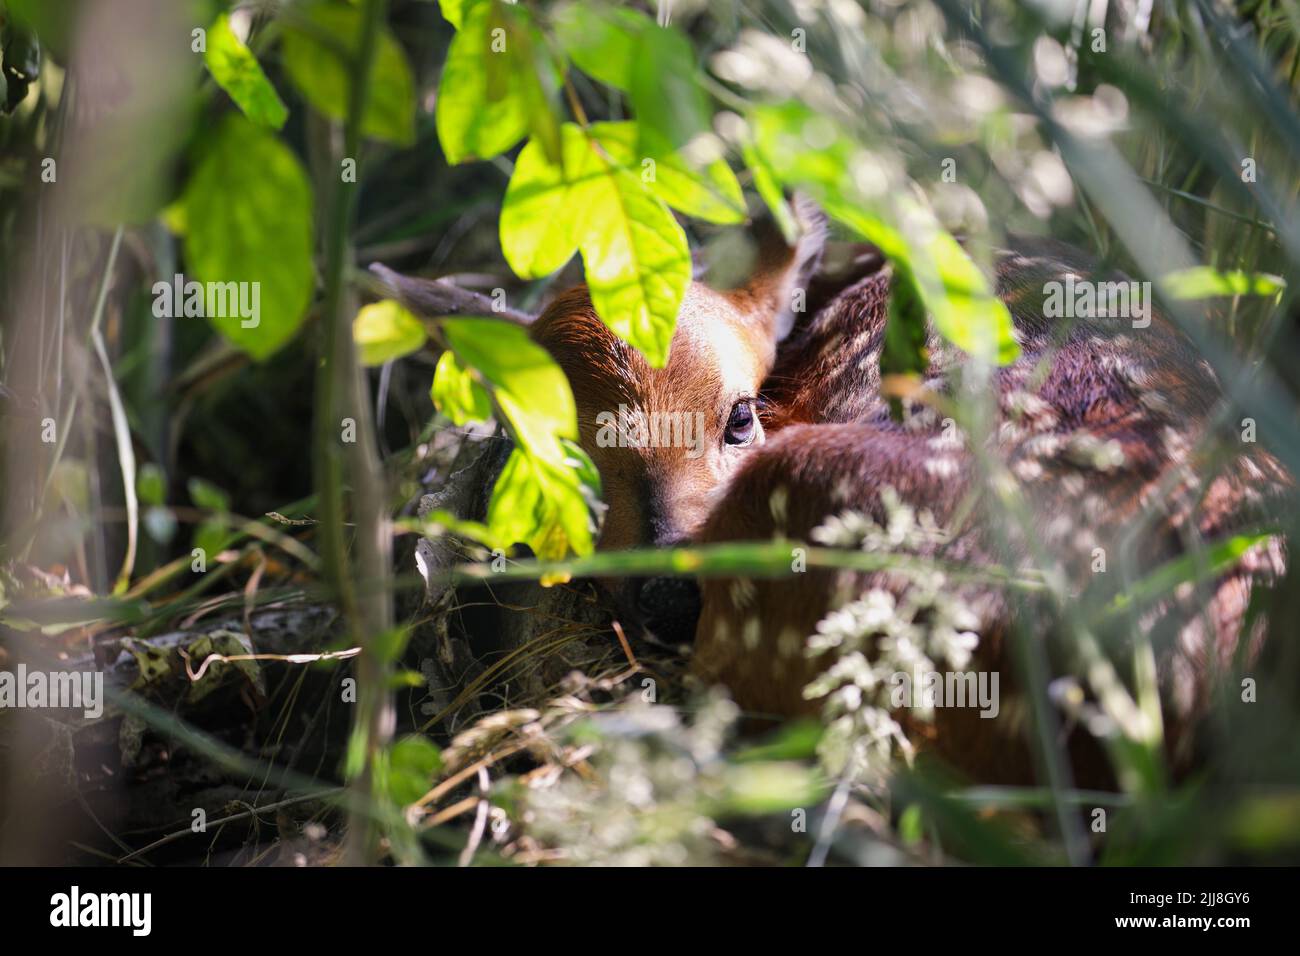 Lindo bebé cerdito escondido por su madre en un matorral de madera con rayos de sol, se riza para evitar la detección. Enfoque selectivo con fondo borroso. Foto de stock